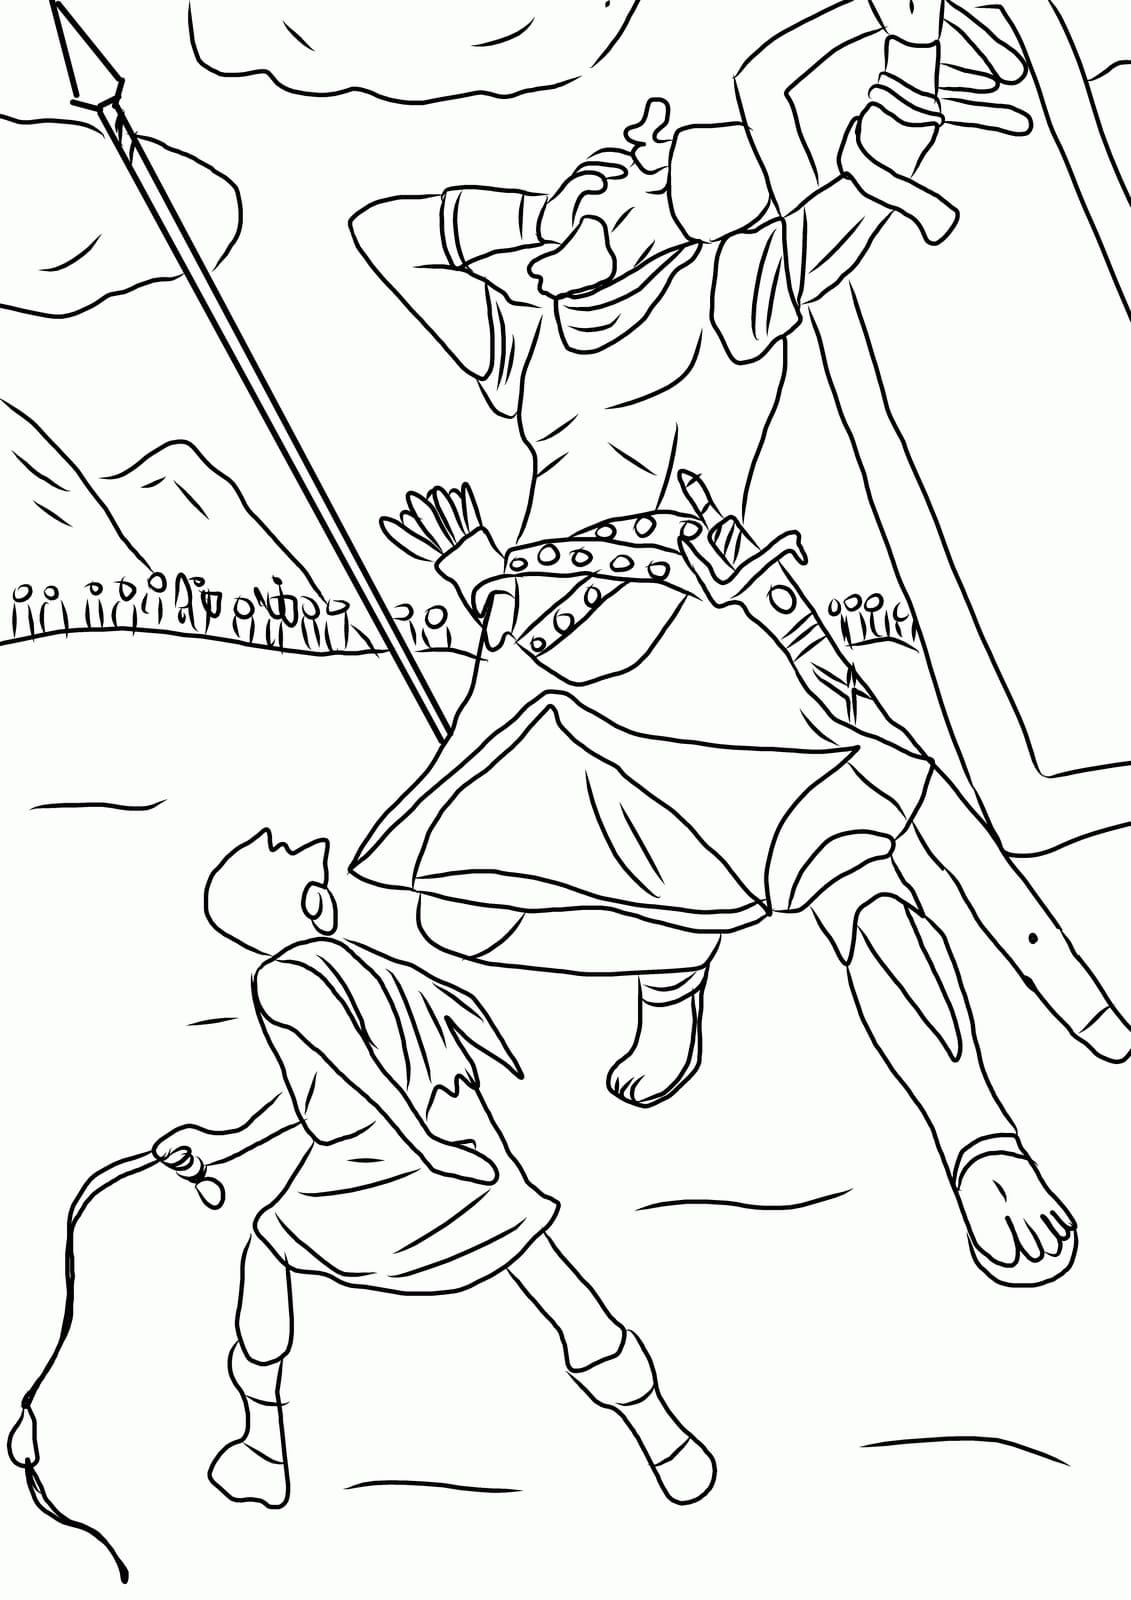 Desenhos de Imprima o esboço de Davi e Golias para colorir